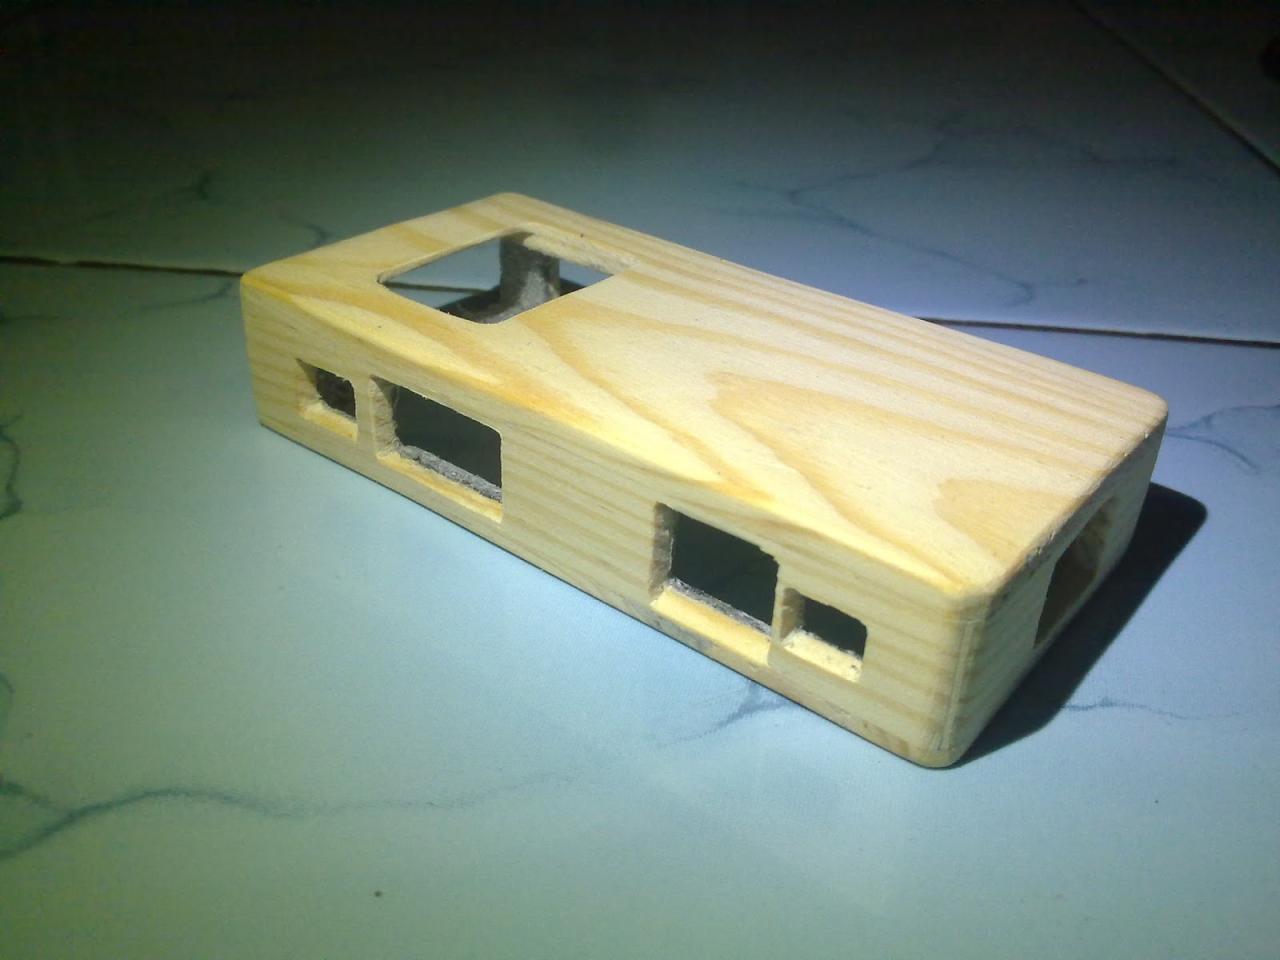 cara membuat casing hp dari kayu terbaru